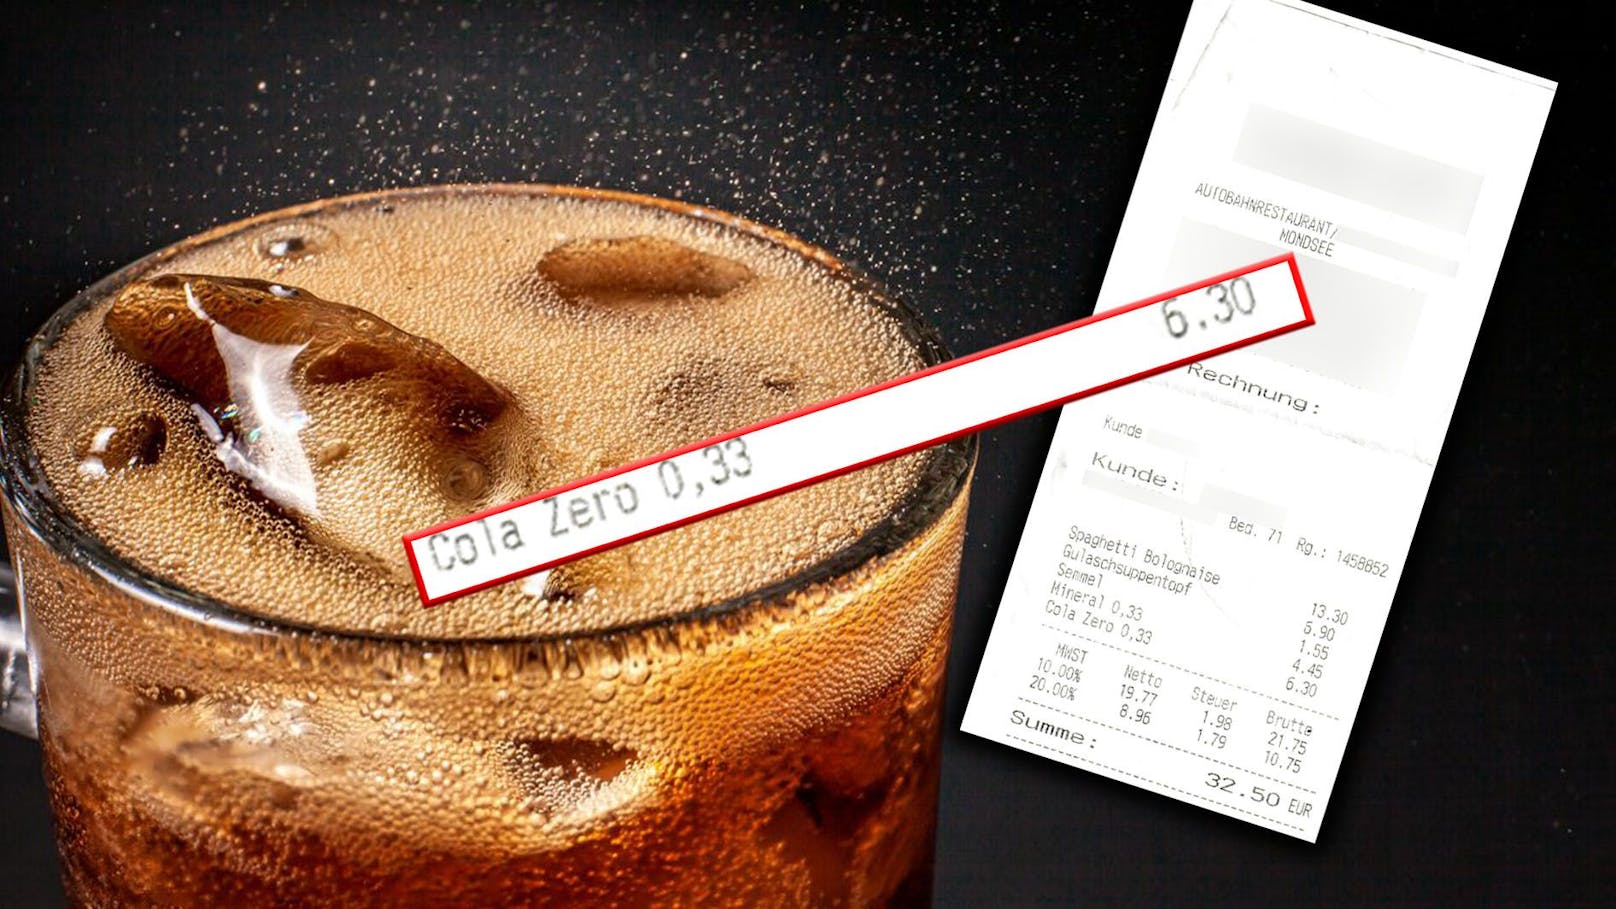 Nicht einmal ein halber Liter Cola kostete den Wiener 6,30 Euro. 